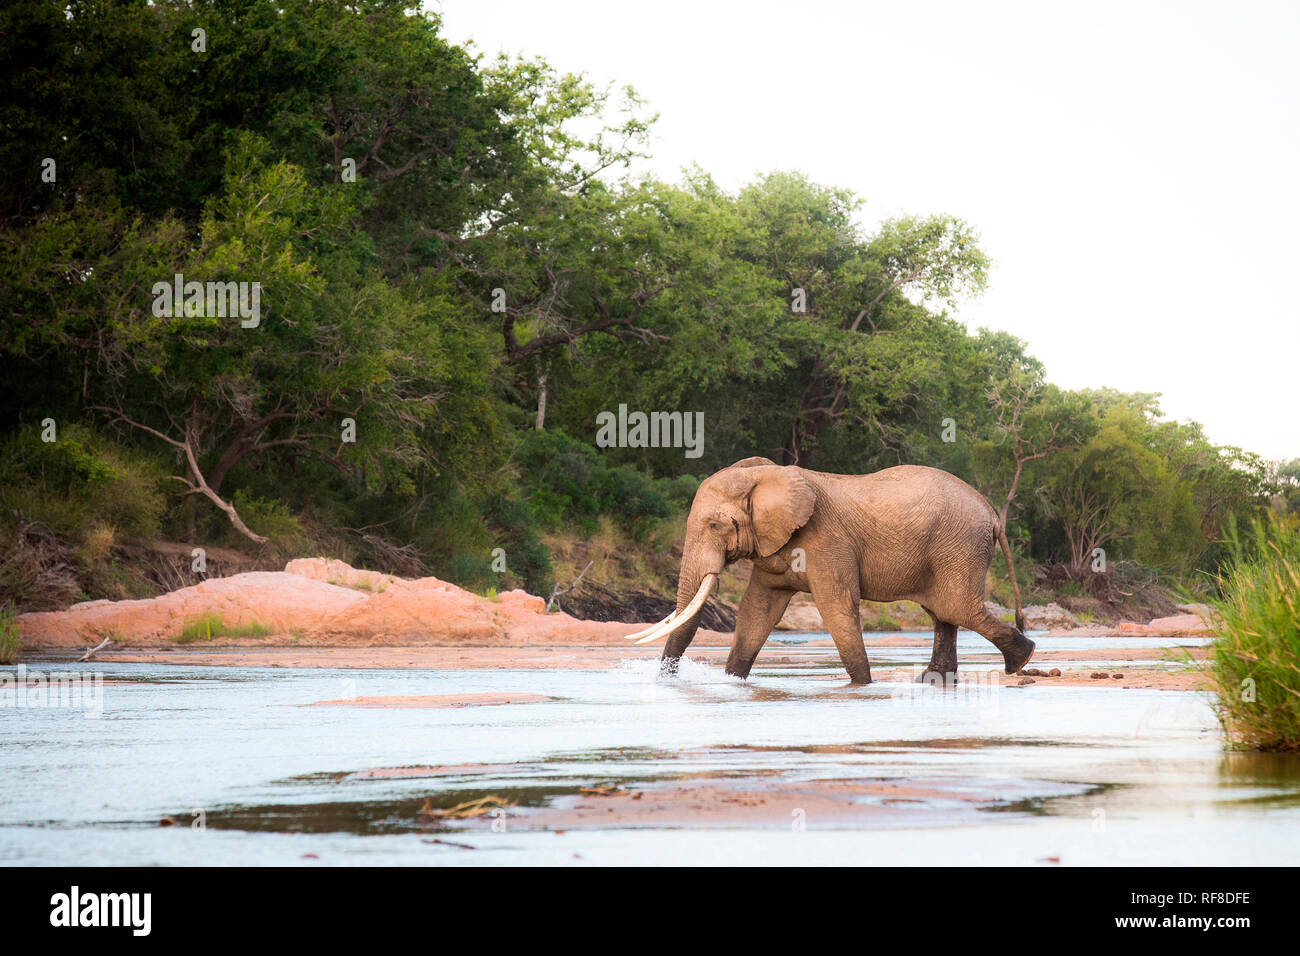 Ein Elefant, Loxodonta africana, mit langen stoßzähnen Spaziergänge in einem seichten Fluss, Amtsleitung in Wasser, Weg, Bäume im Hintergrund Stockfoto